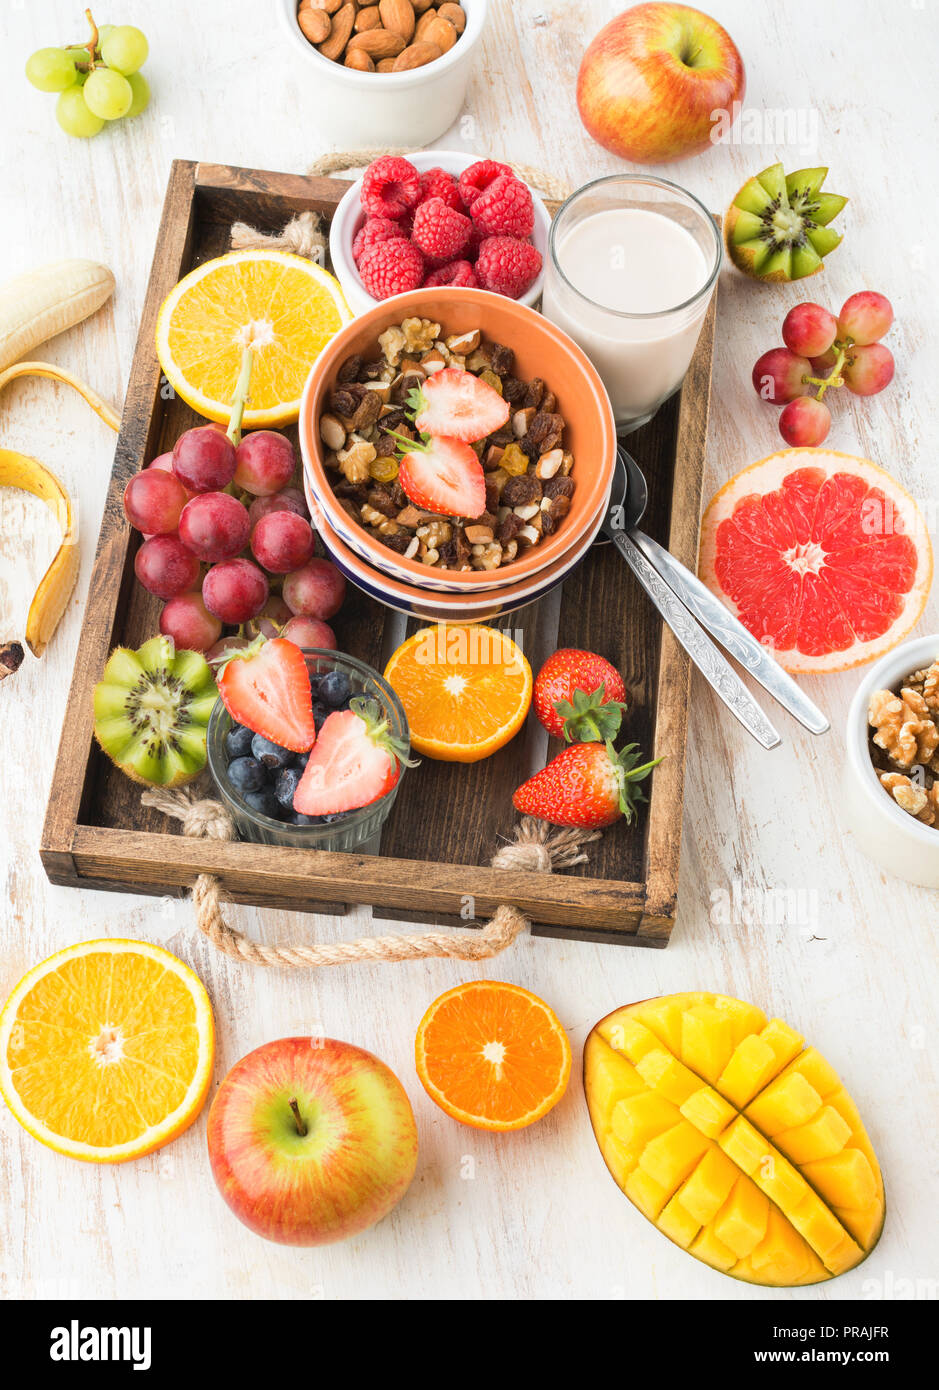 L'écrou et de grain paléo granola aux fruits servi avec des fruits et petits fruits, lait noix, vertical, vue de dessus, selective focus Banque D'Images